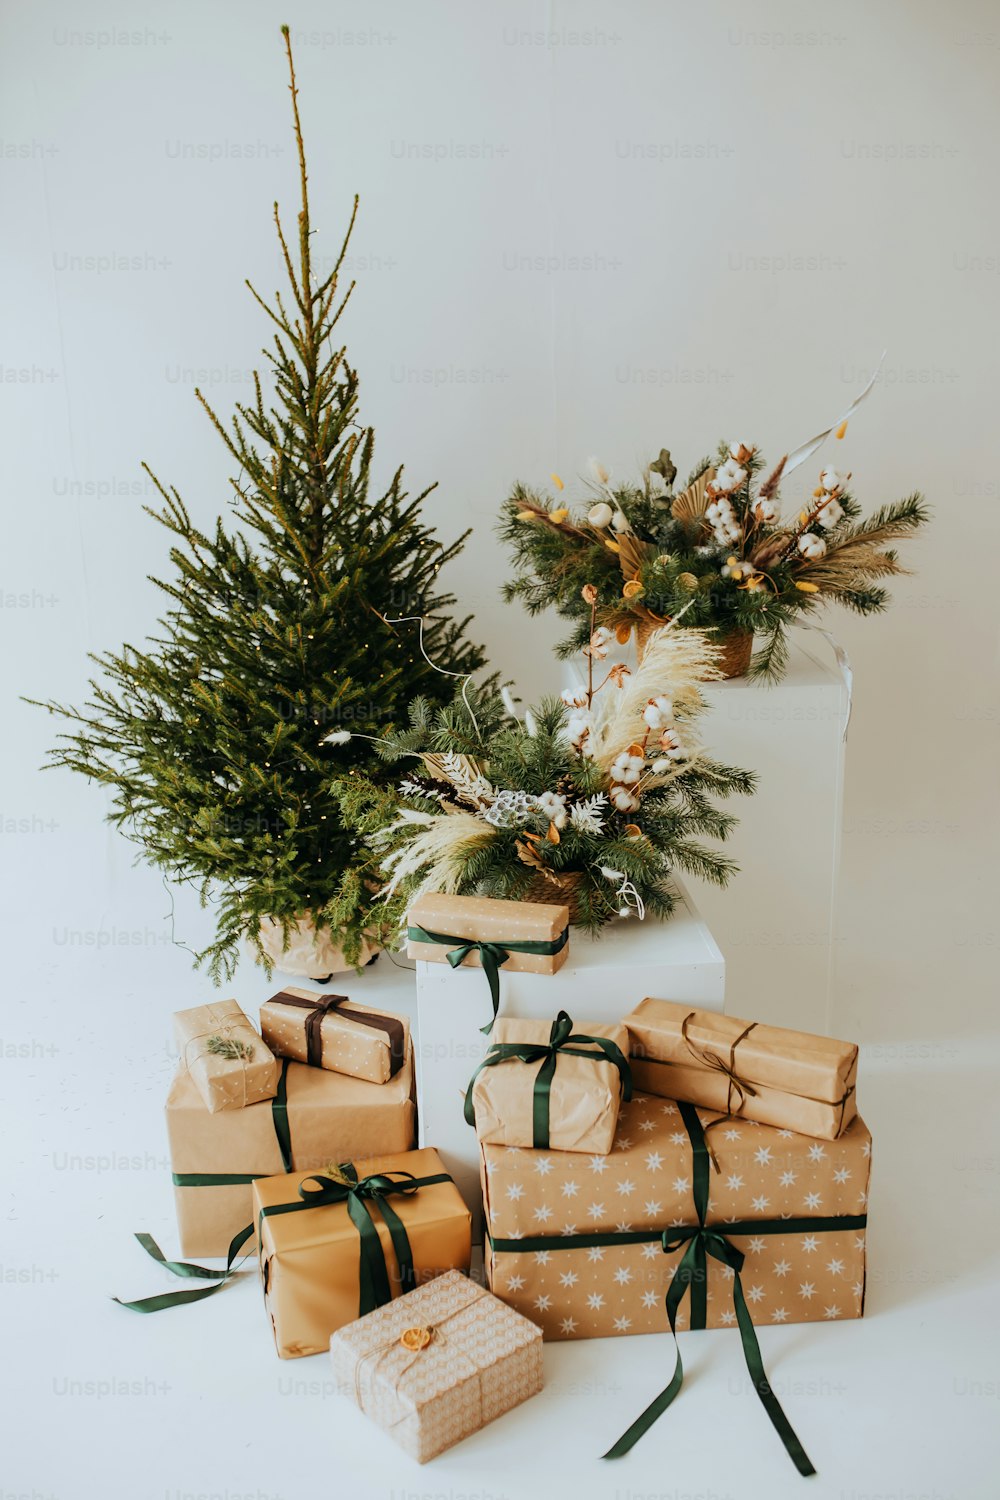 Un grupo de regalos envueltos sentados junto a un árbol de Navidad